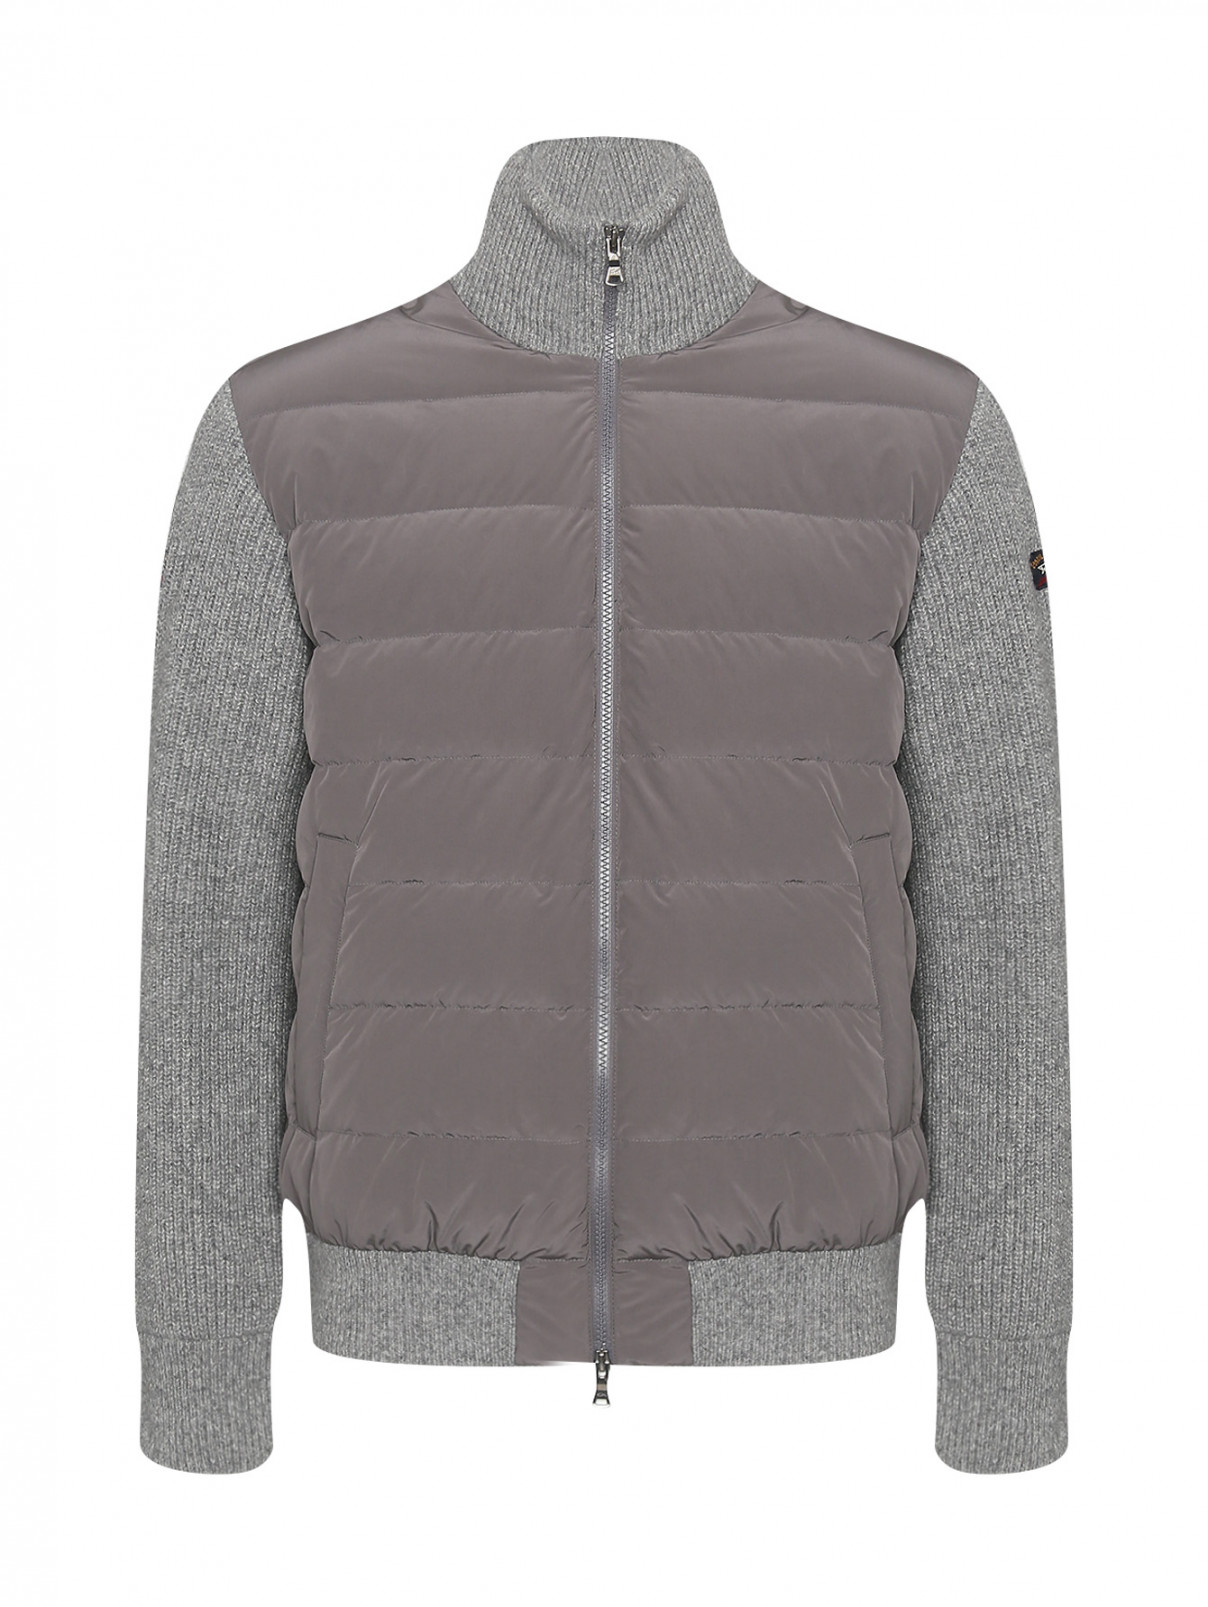 Комбинированная куртка на молнии с карманами Paul&Shark  –  Общий вид  – Цвет:  Серый